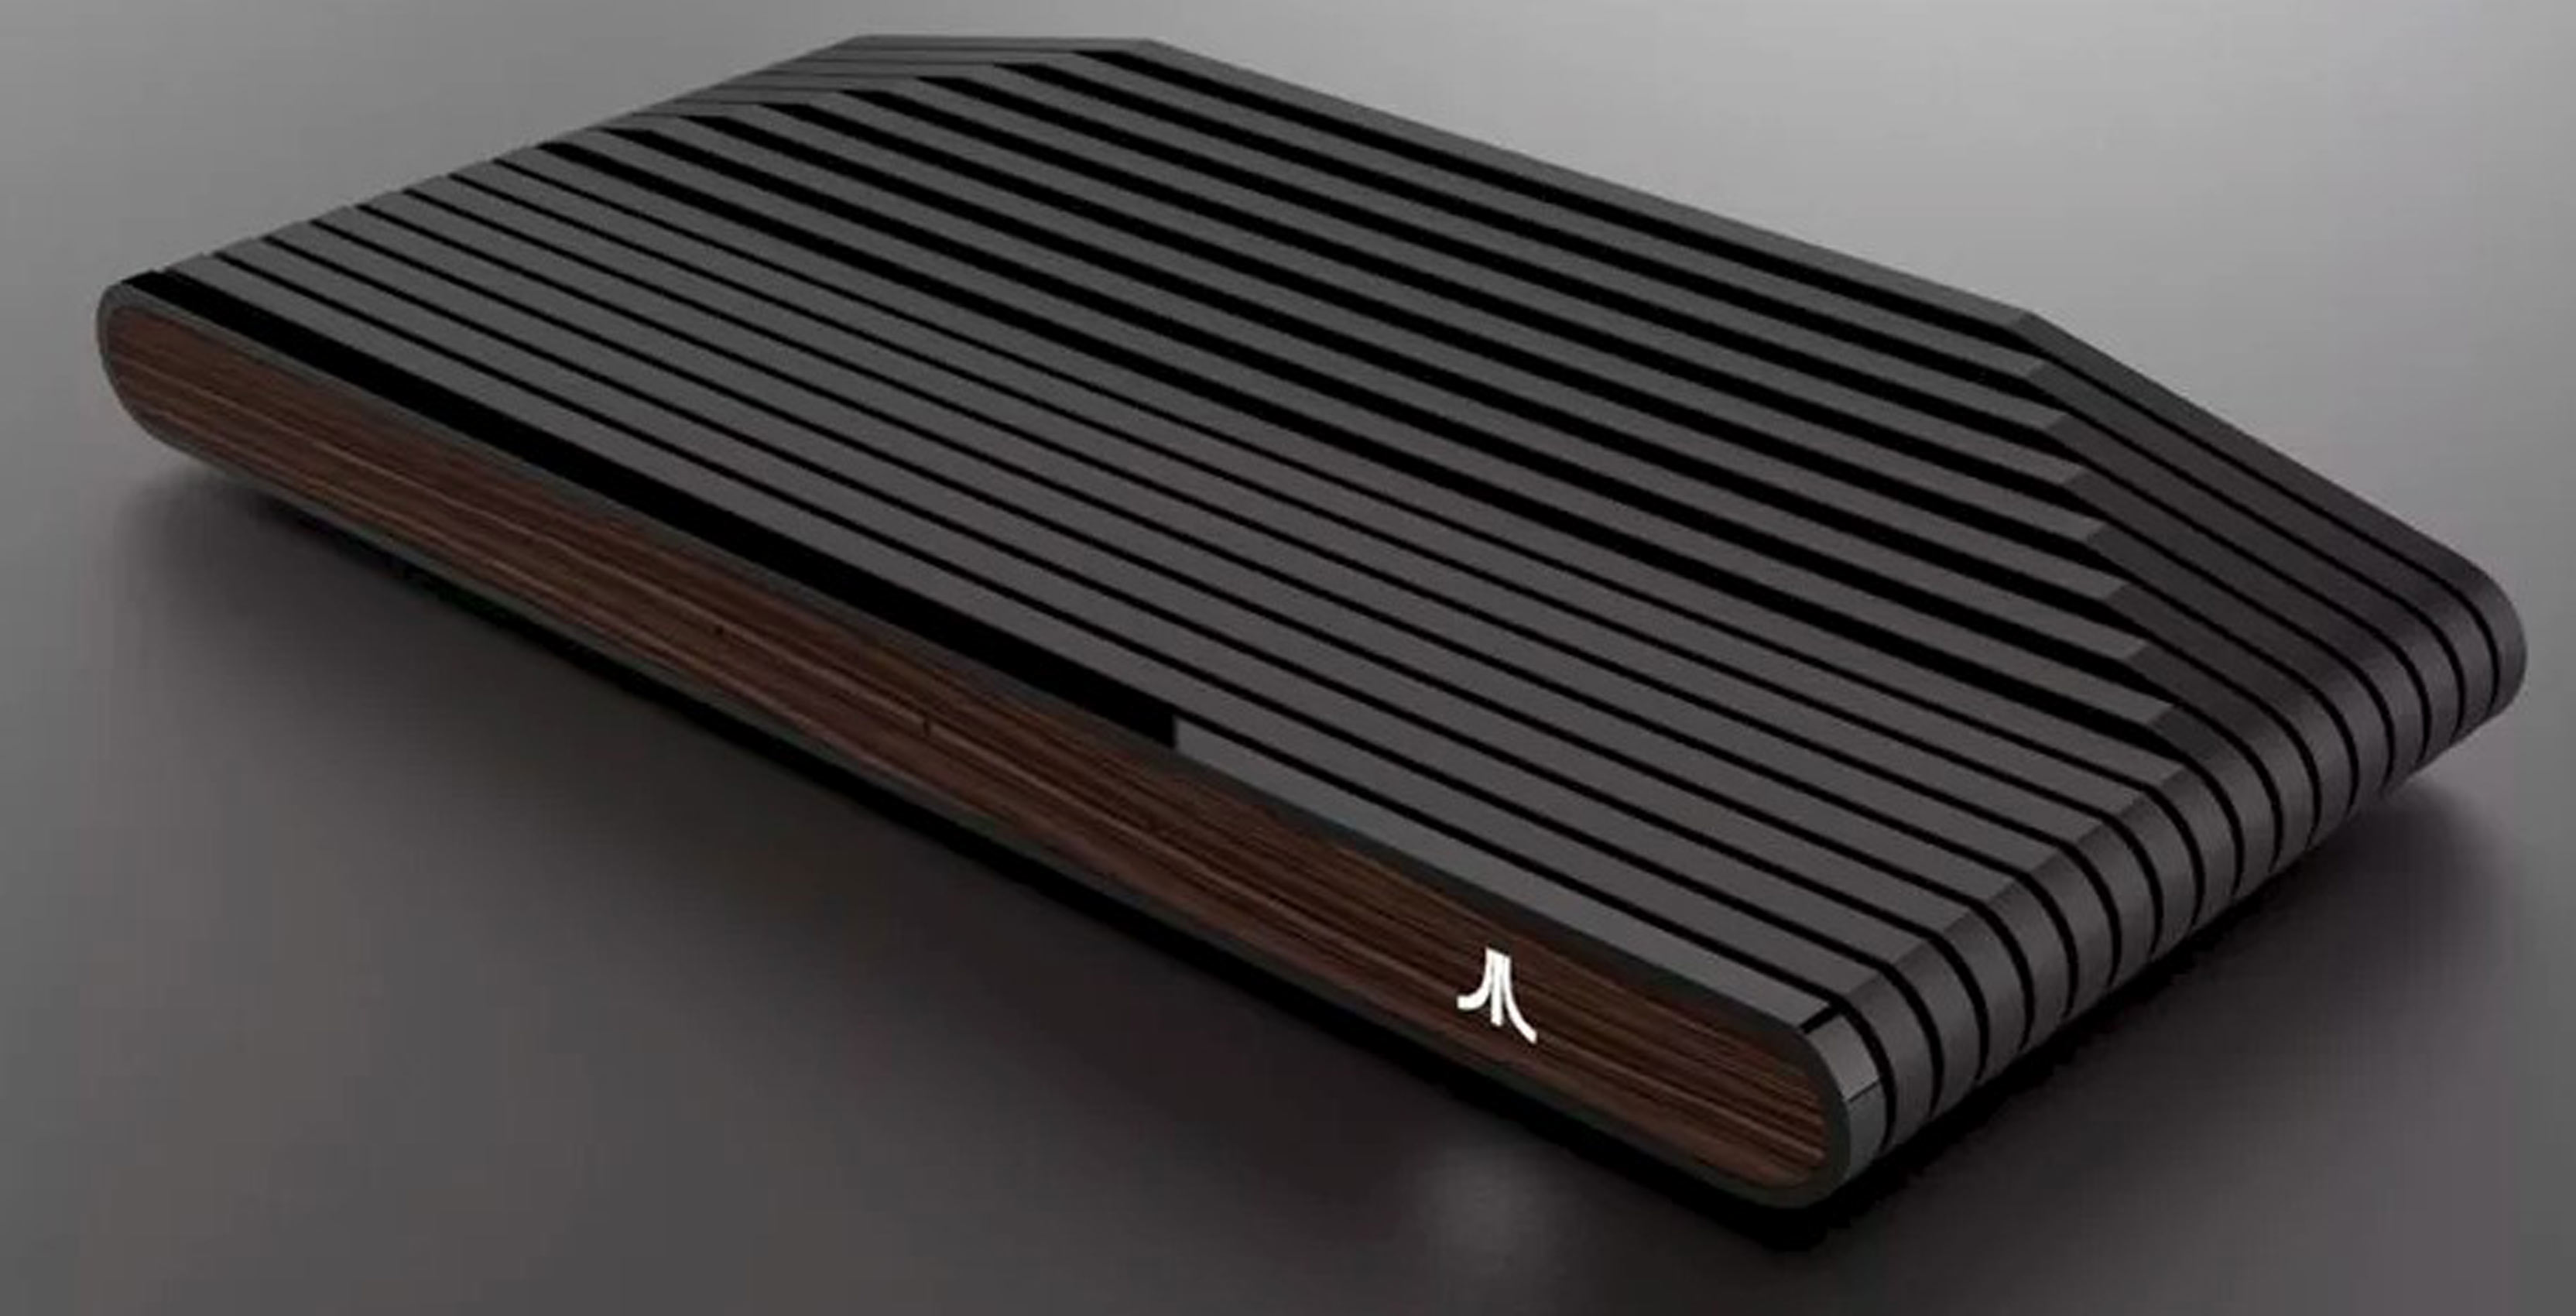 Atari box